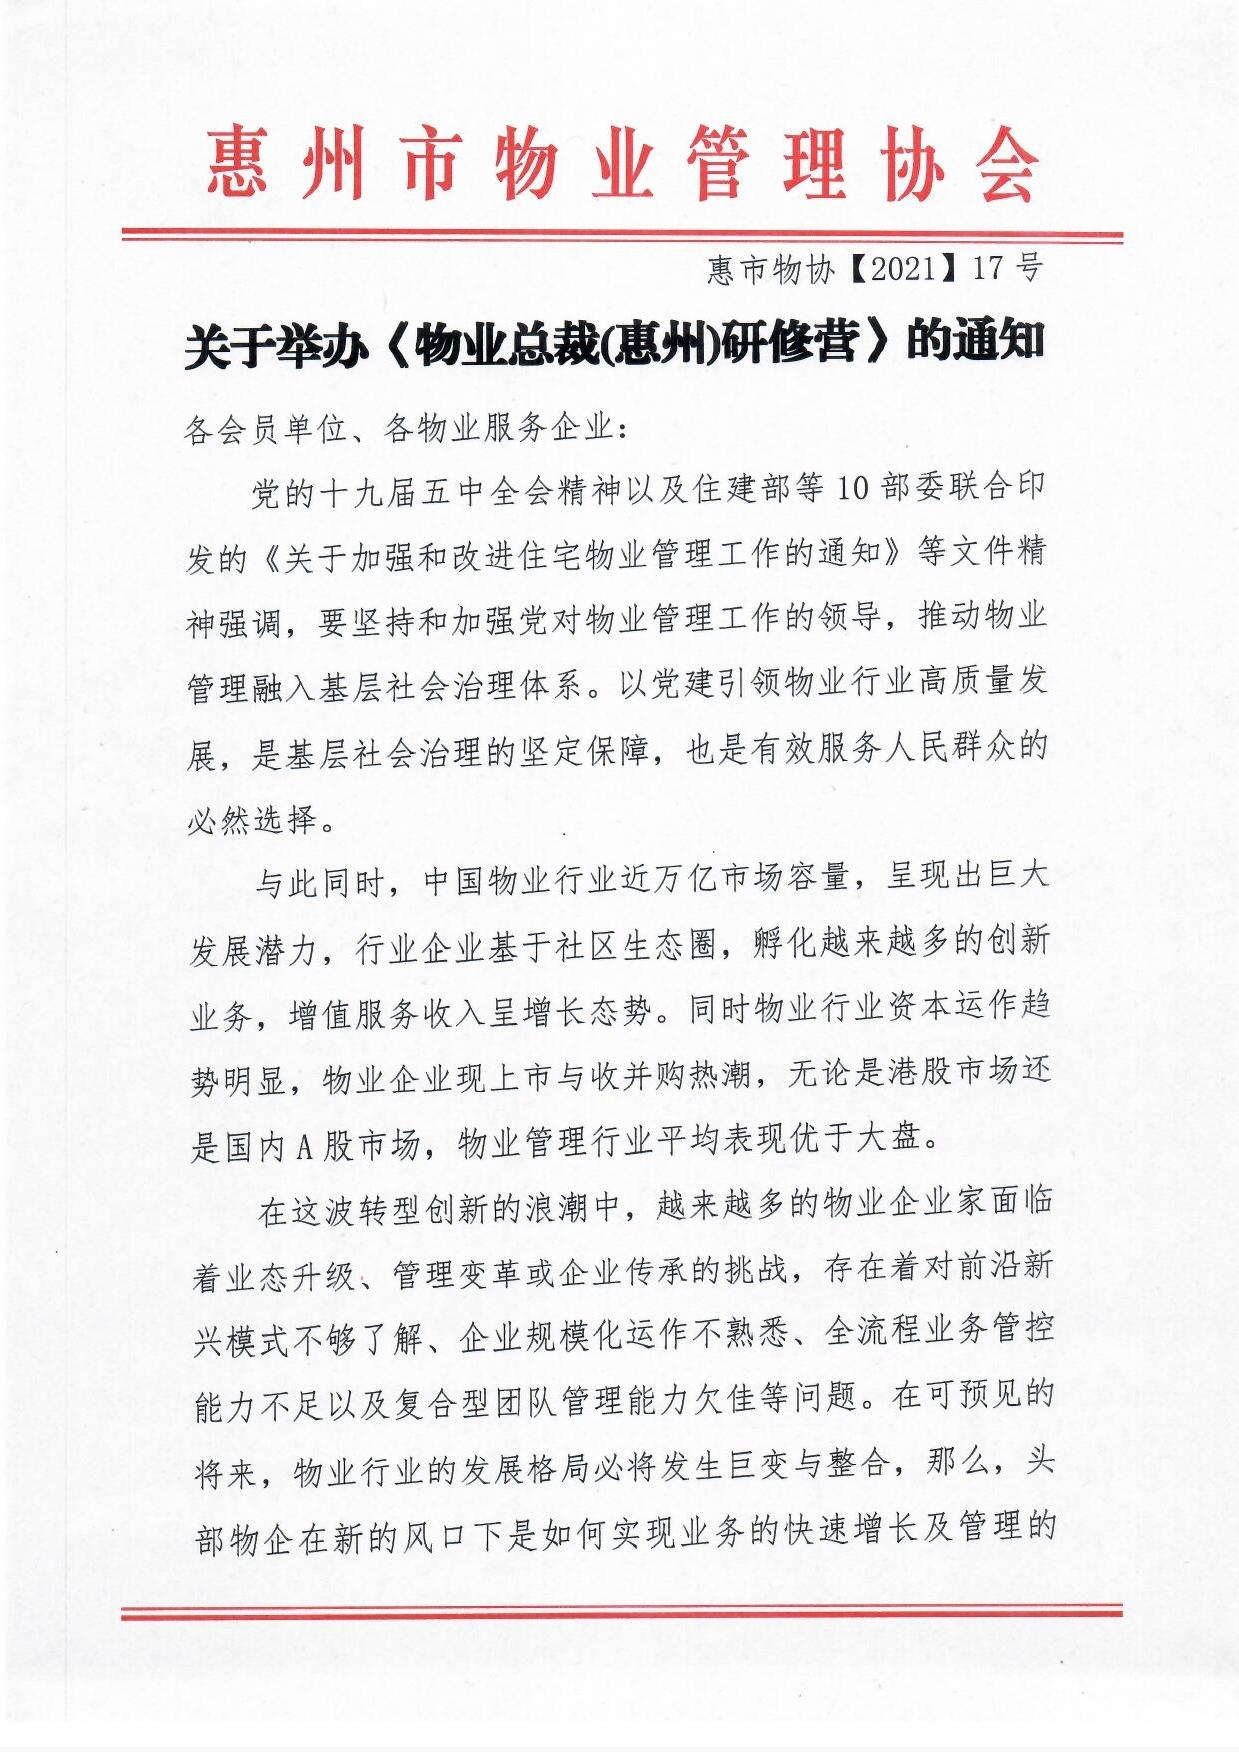 关于举办《物业总裁(惠州)研修营》的通知1.jpg